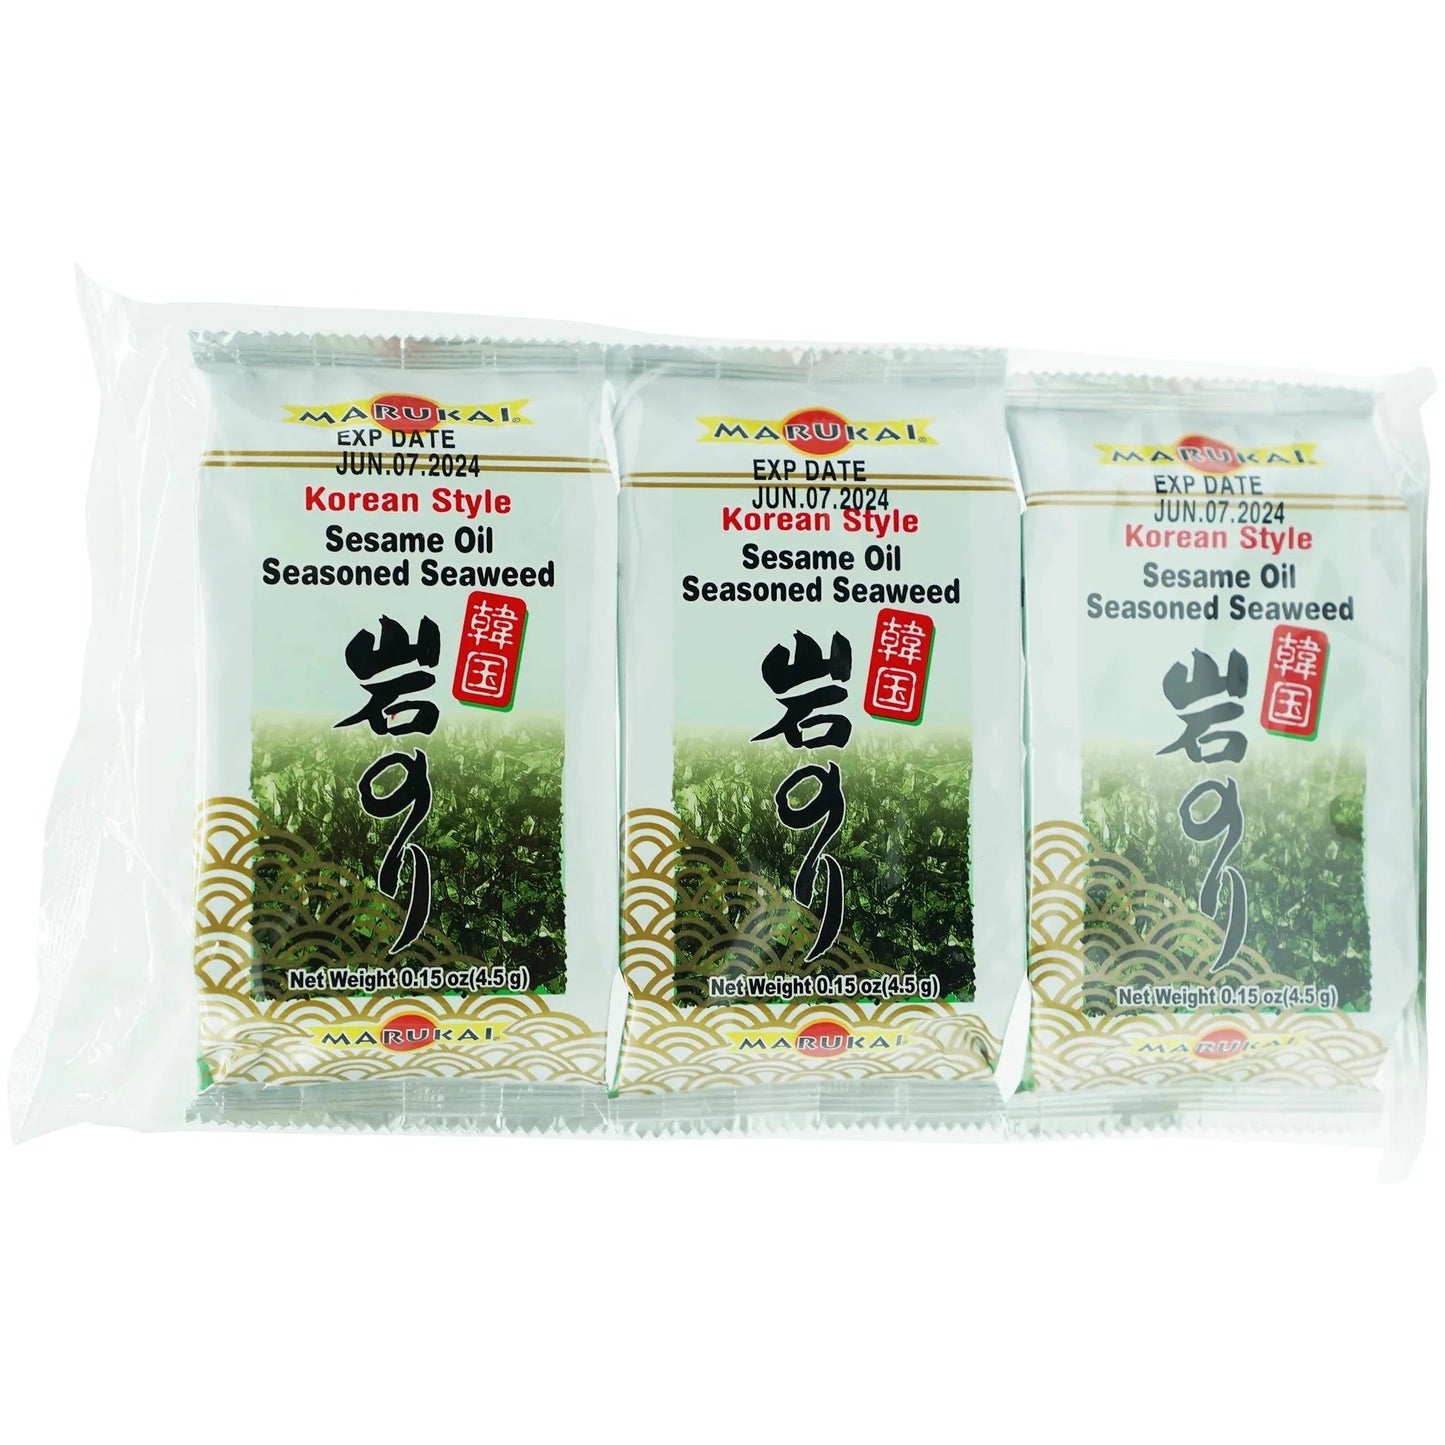 Marukai Korean Style Seasoned Seaweed 3pck 0.45 oz - Tokyo Central - Seaweed - Marukai -